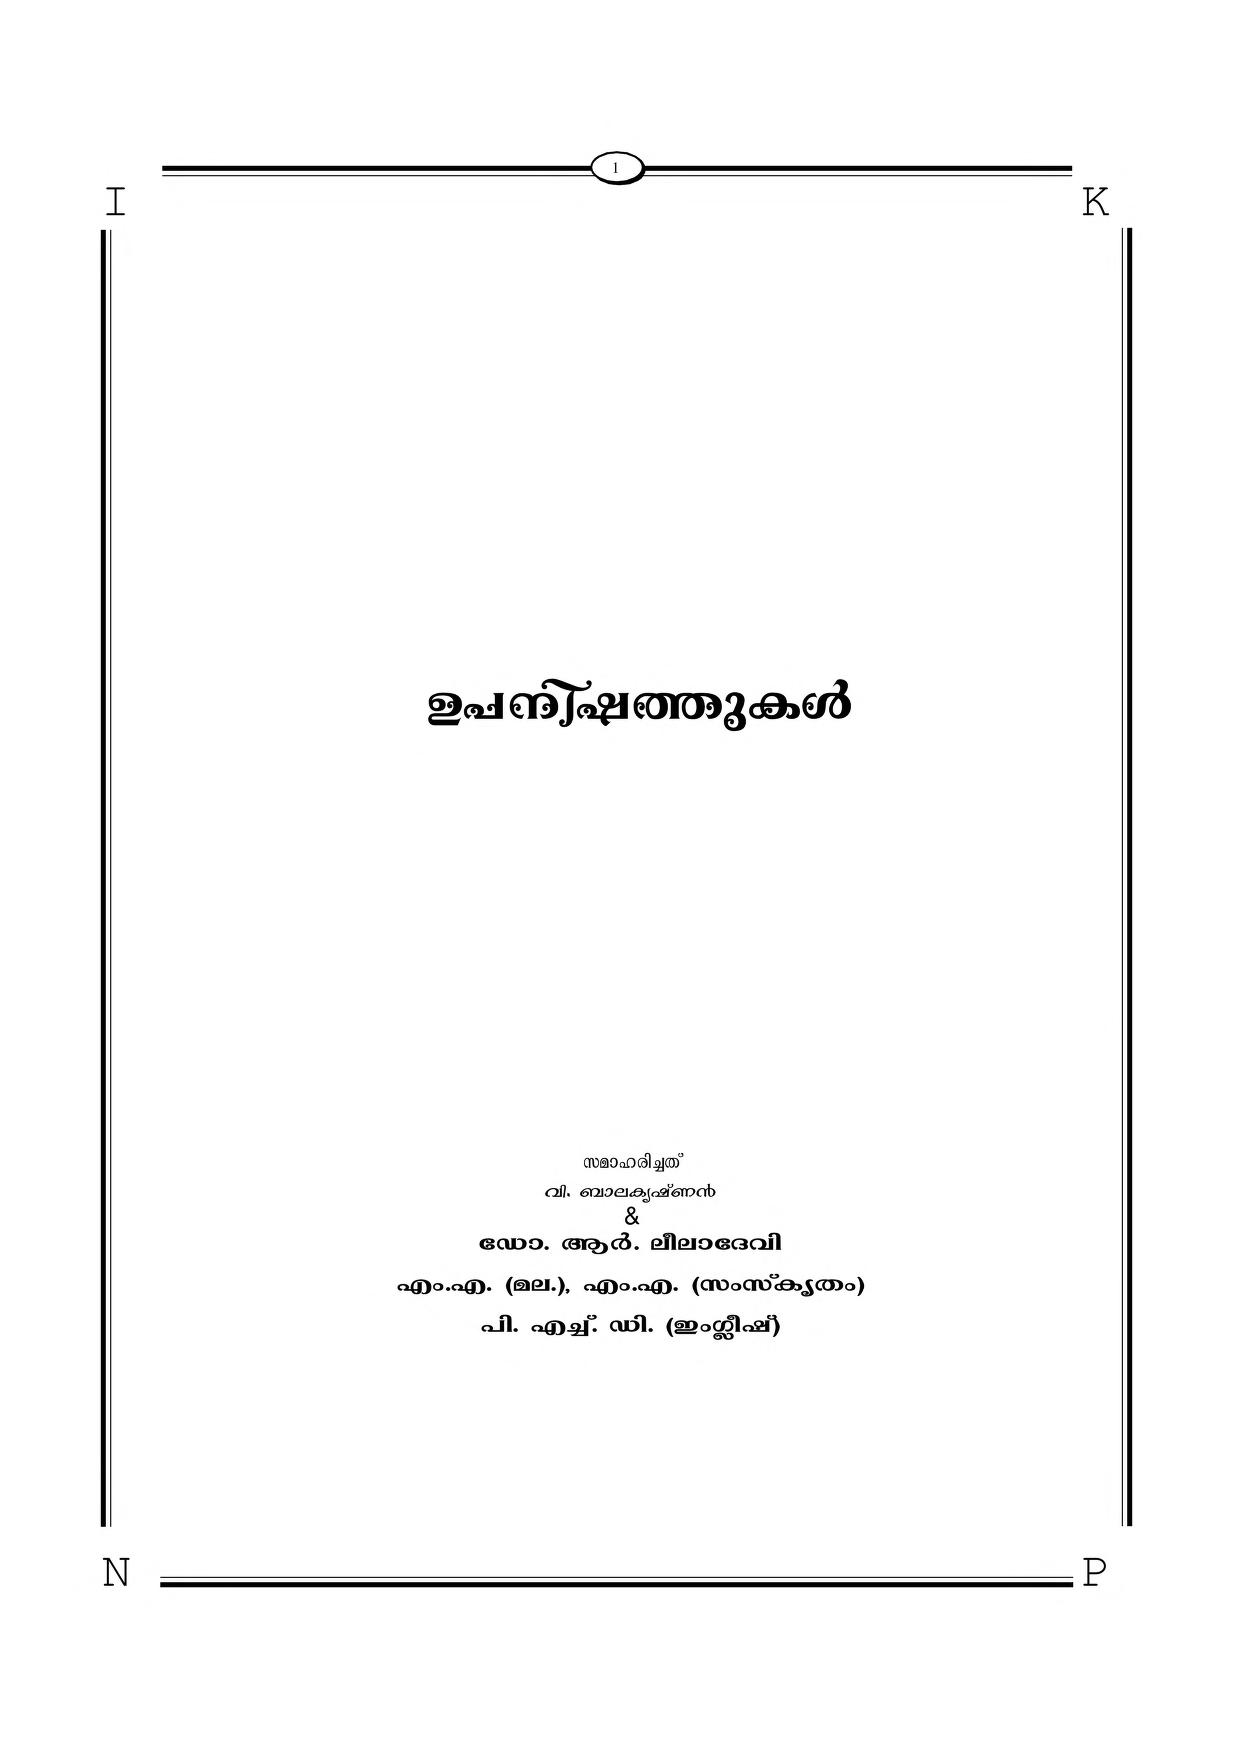 108 upanishads malayalam pdf download